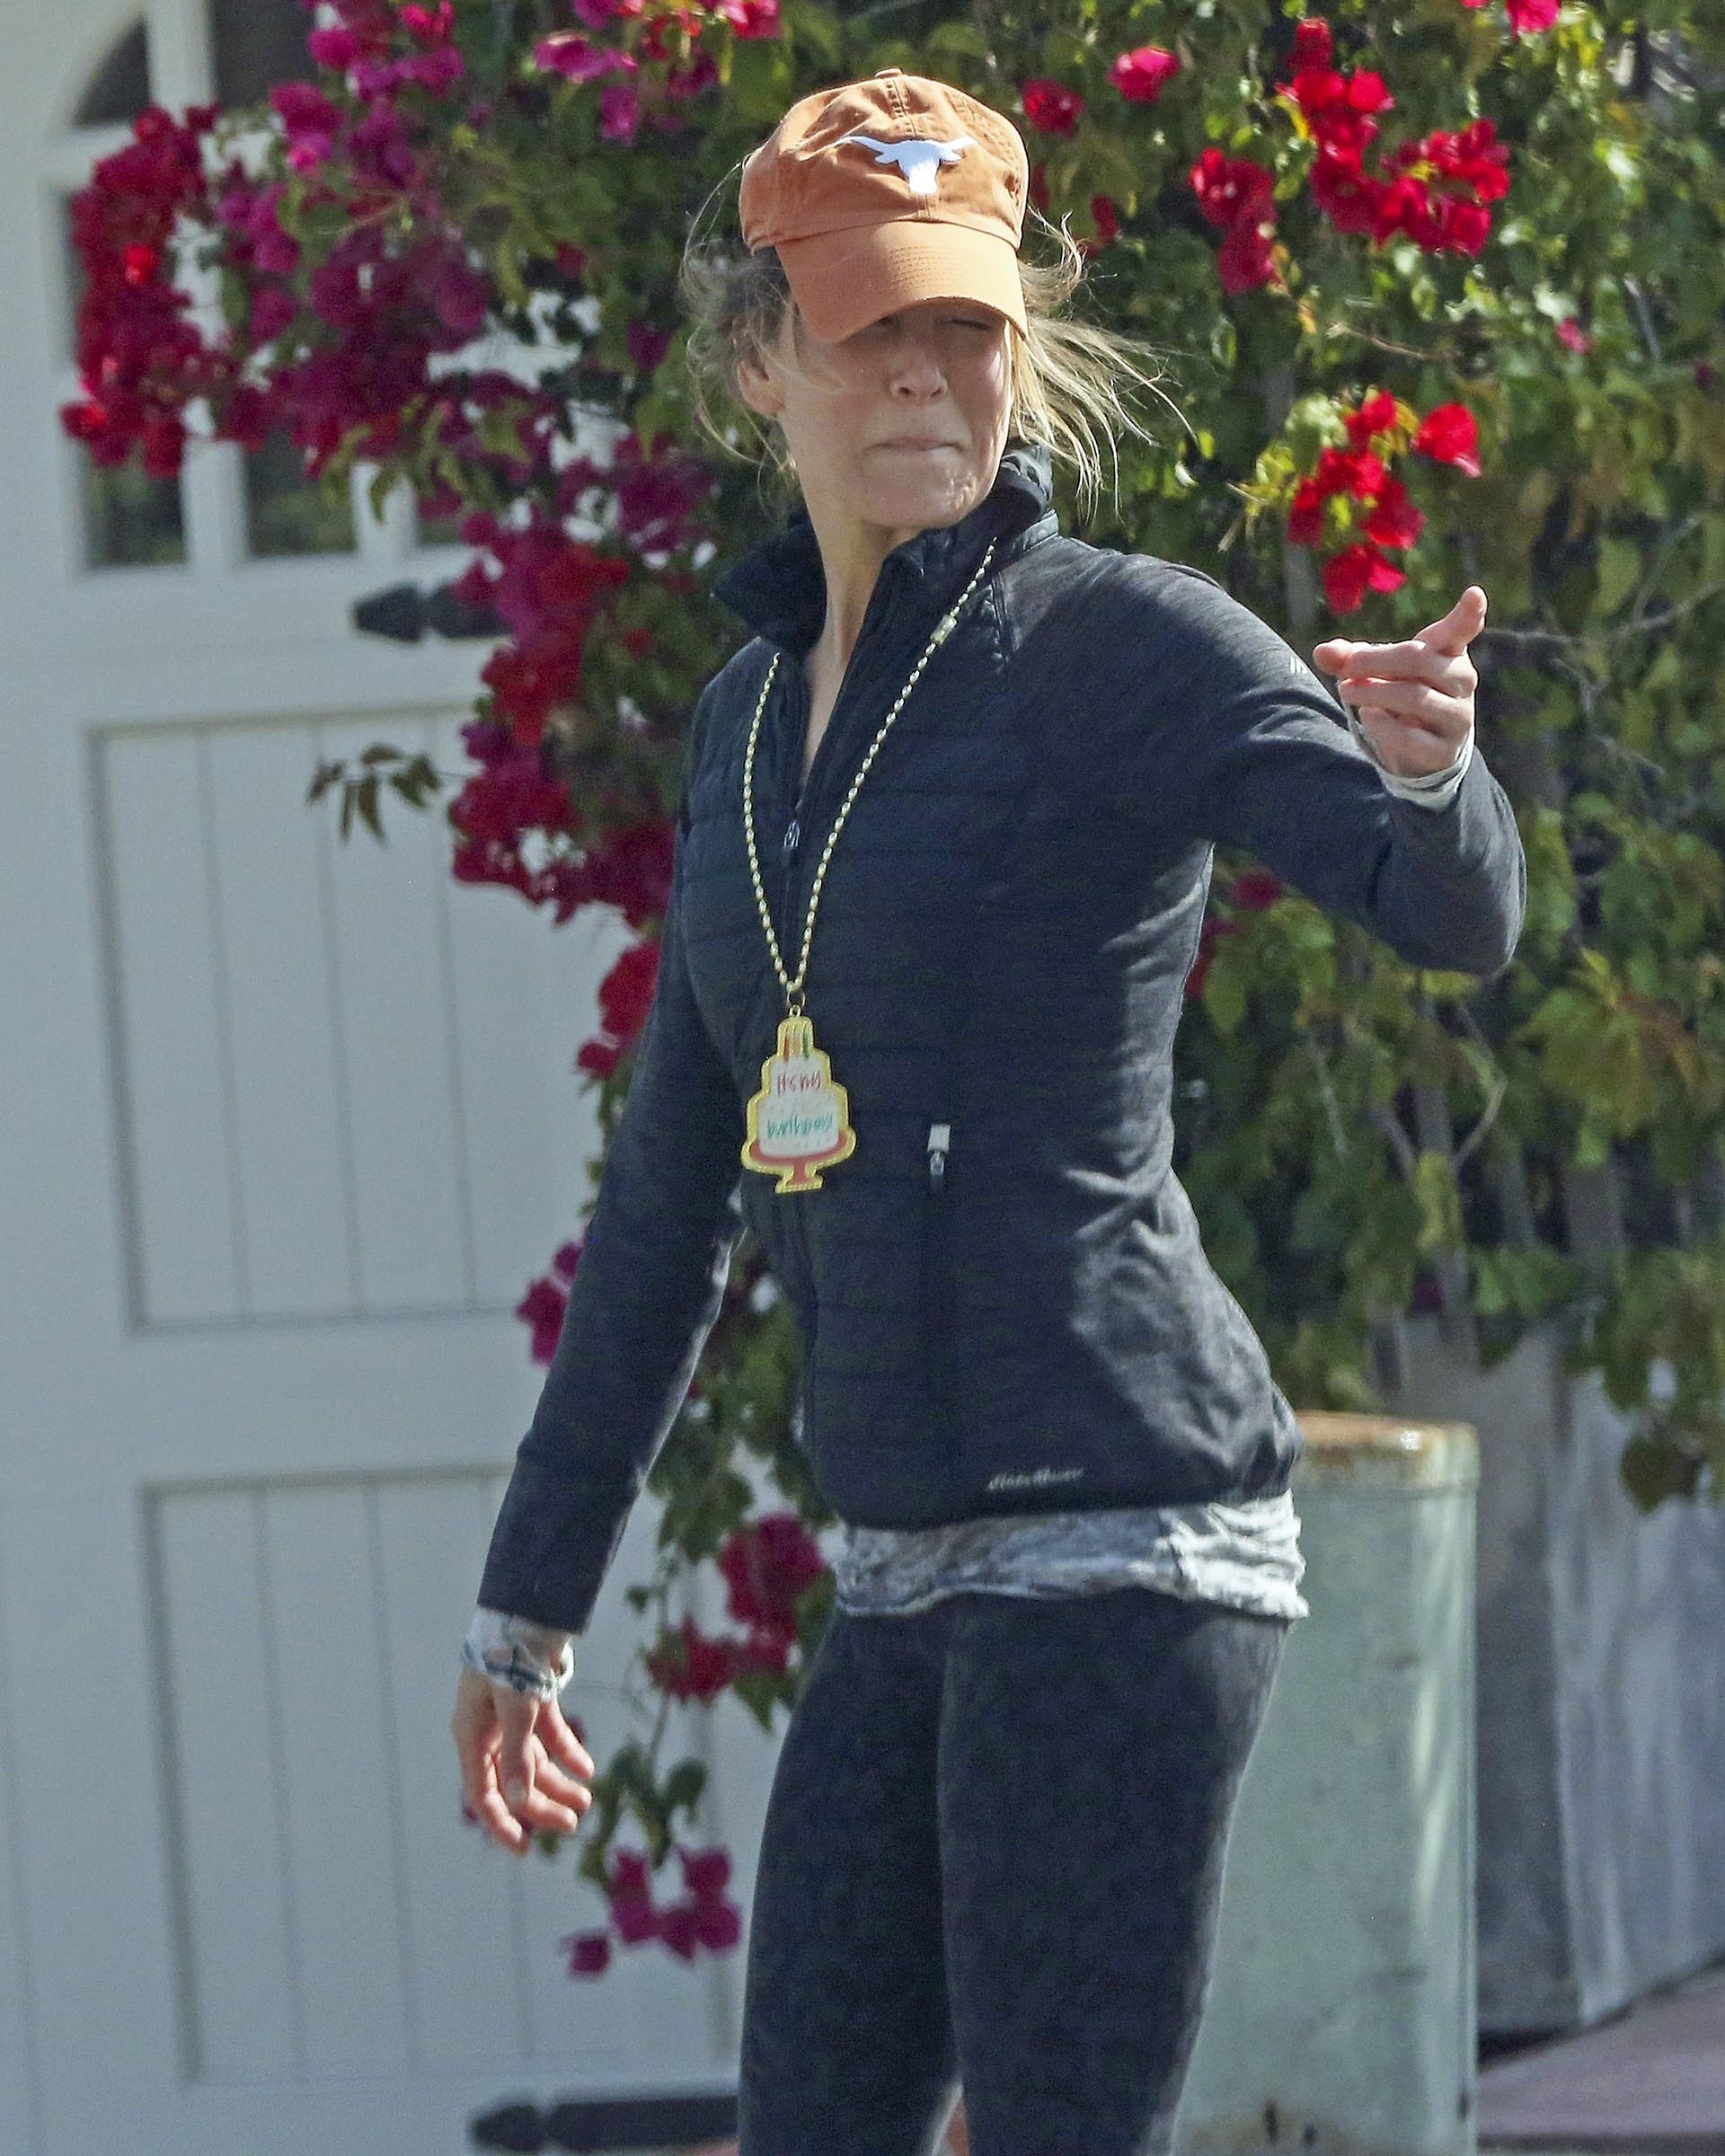 Renée Zellweger continúa con los festejos de su cumpleaños, que fue hace unas semanas, a fines de abril. Fue fotografiada mientras daba un paseo en un parque de Los Ángeles y a su look deportivo le sumó un collar con un cartel de "feliz cumpleaños". Además, llevó una gorra color naranja